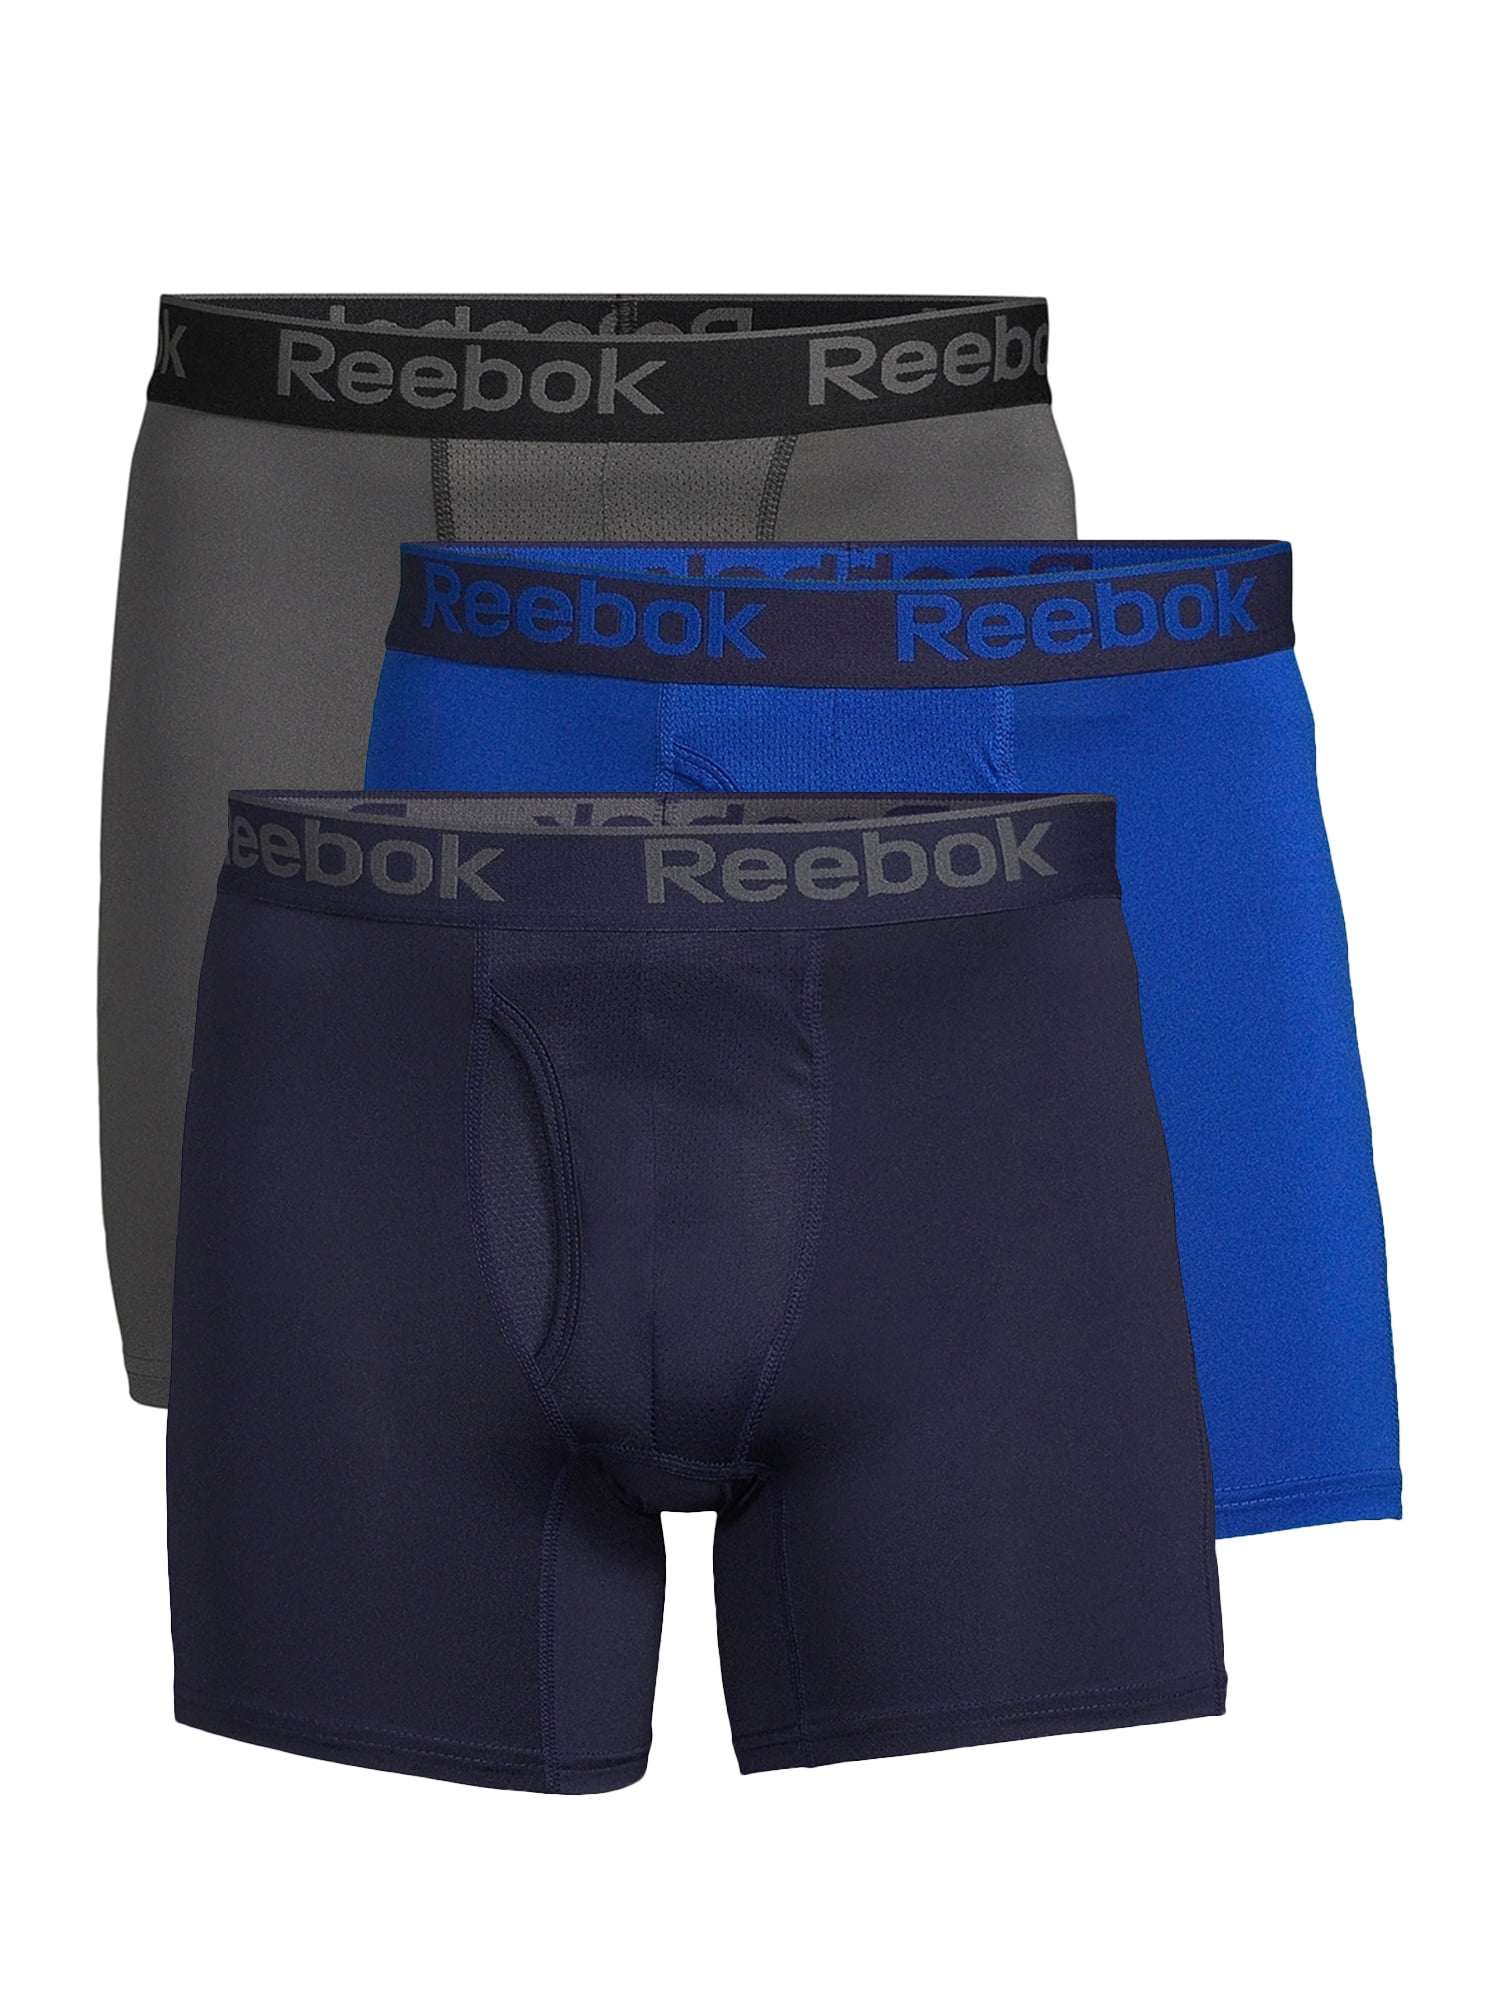 3 Pack Reebok Men’s Underwear Big & Tall Performance Boxer Briefs 